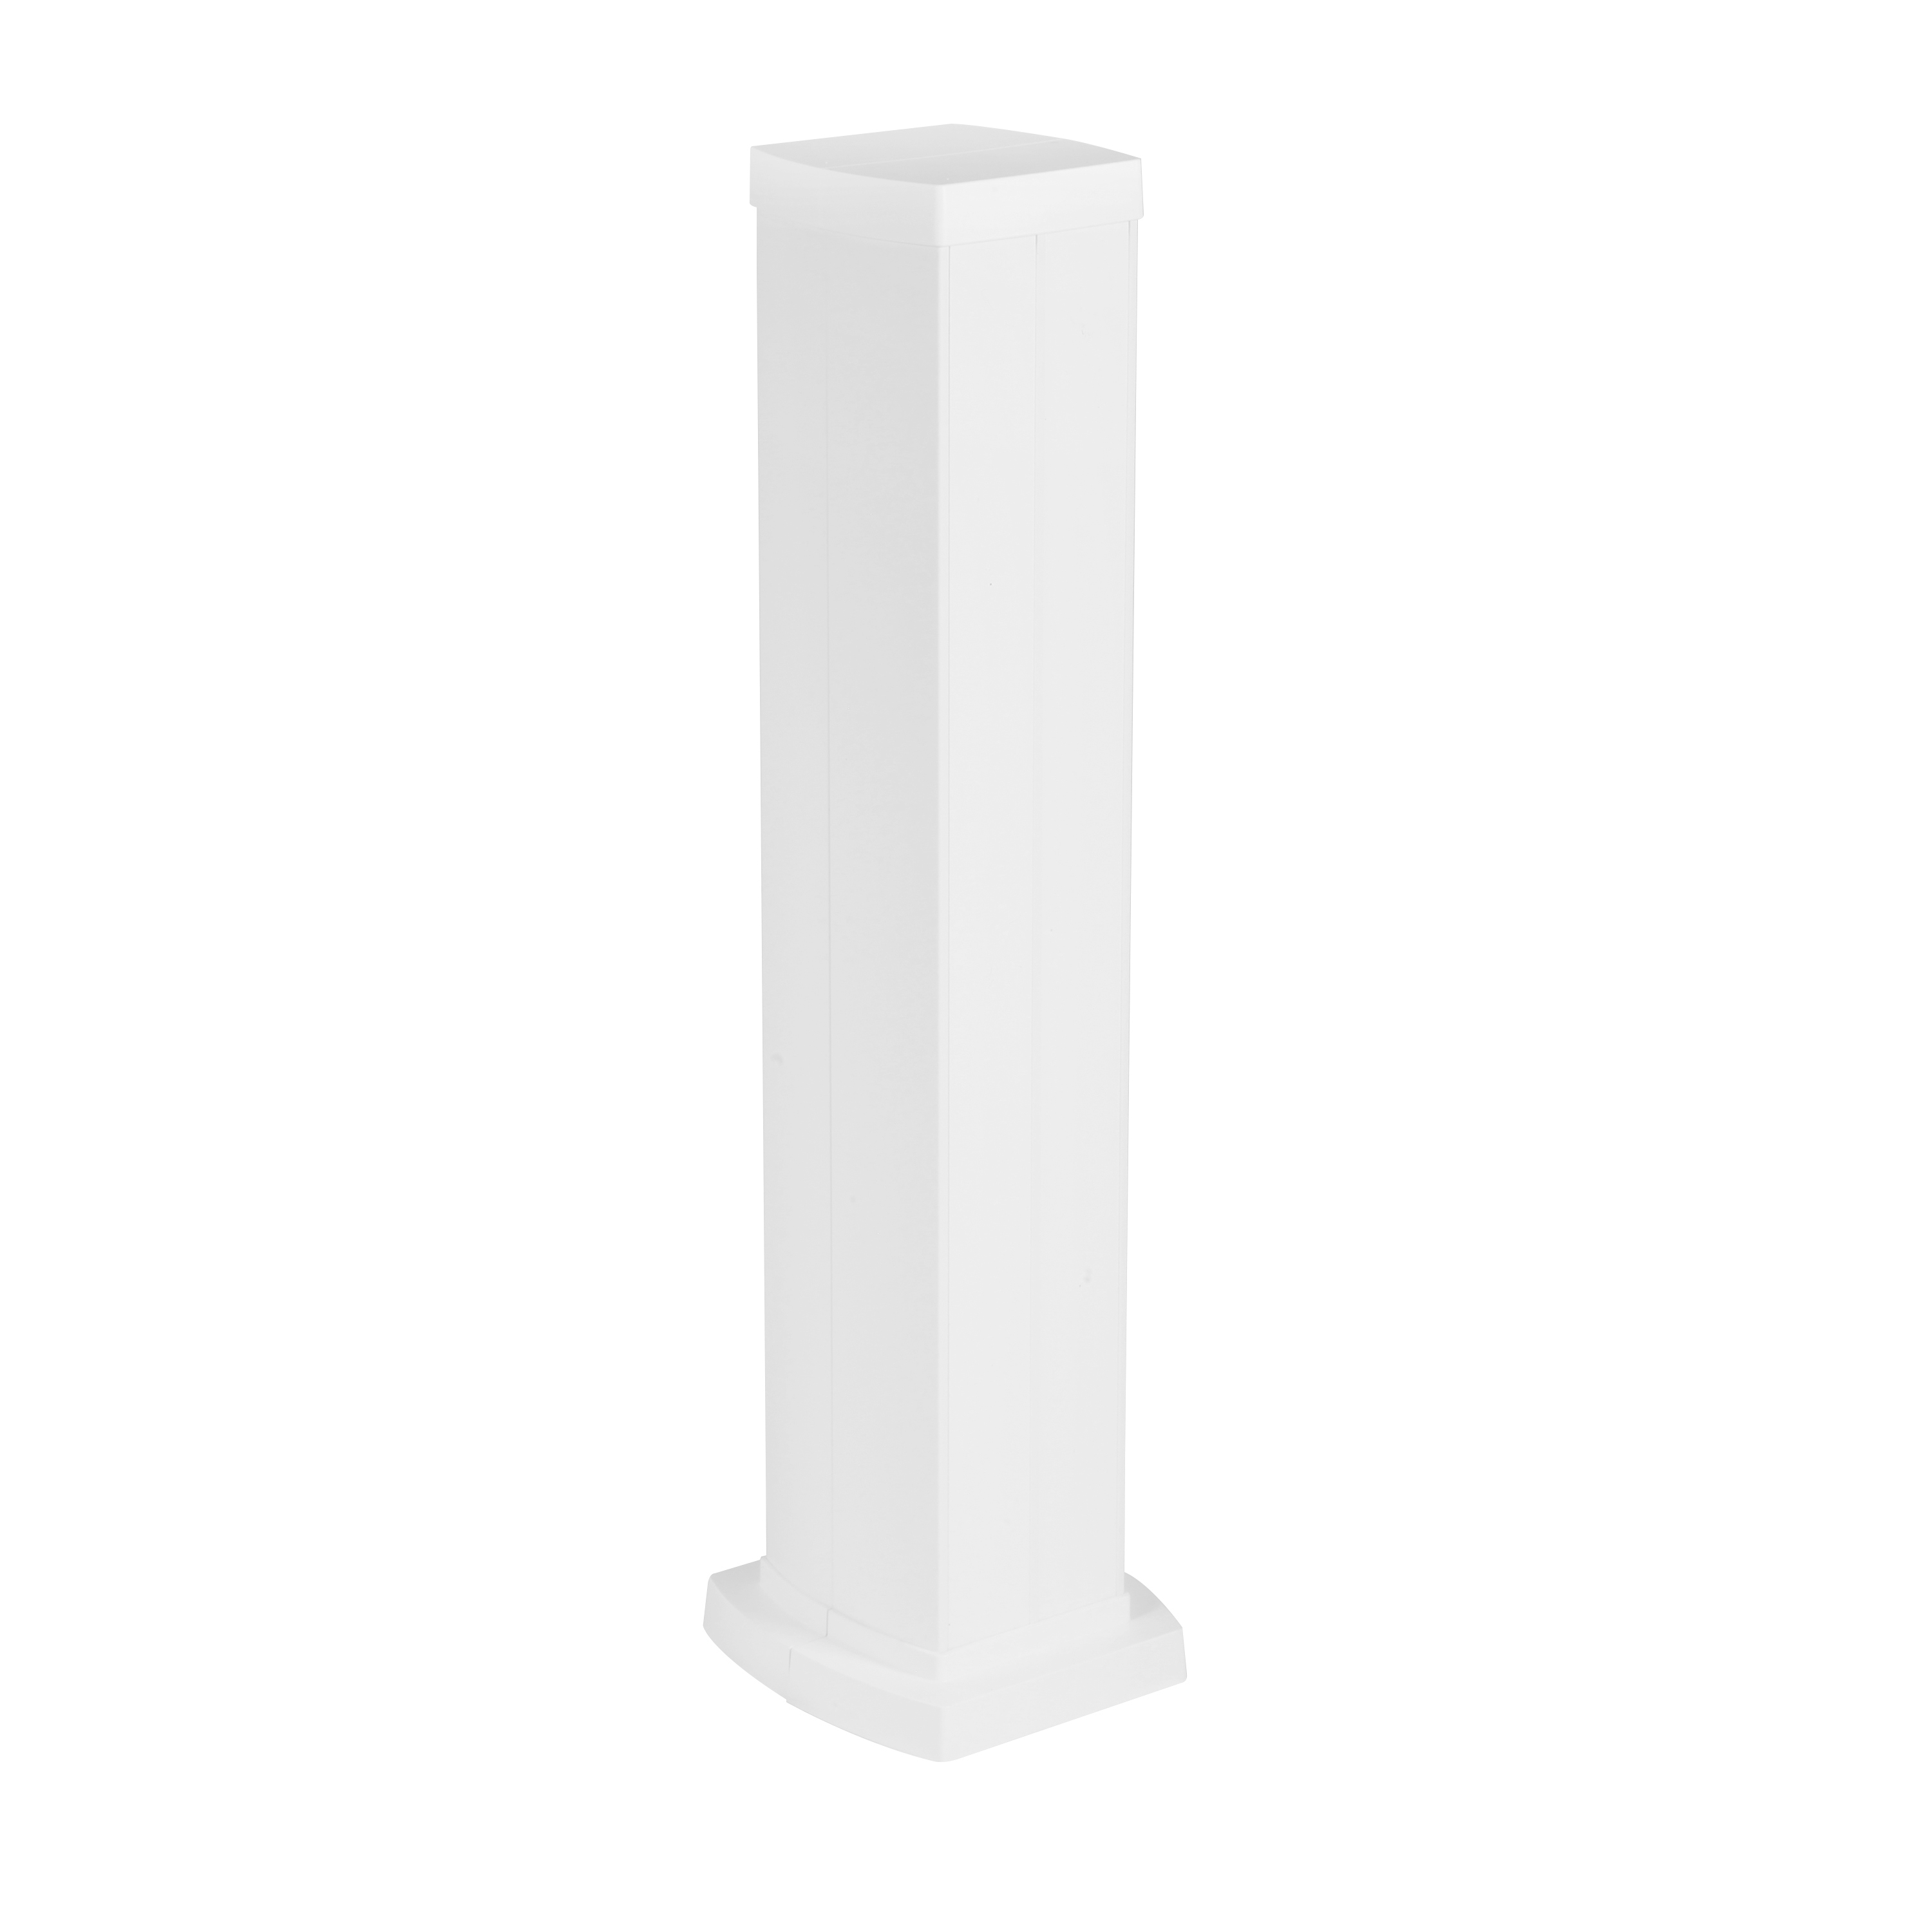 Snap-On мини-колонна алюминиевая с крышкой из пластика 4 секции, высота 0,68 метра, цвет белый 653043 Legrand